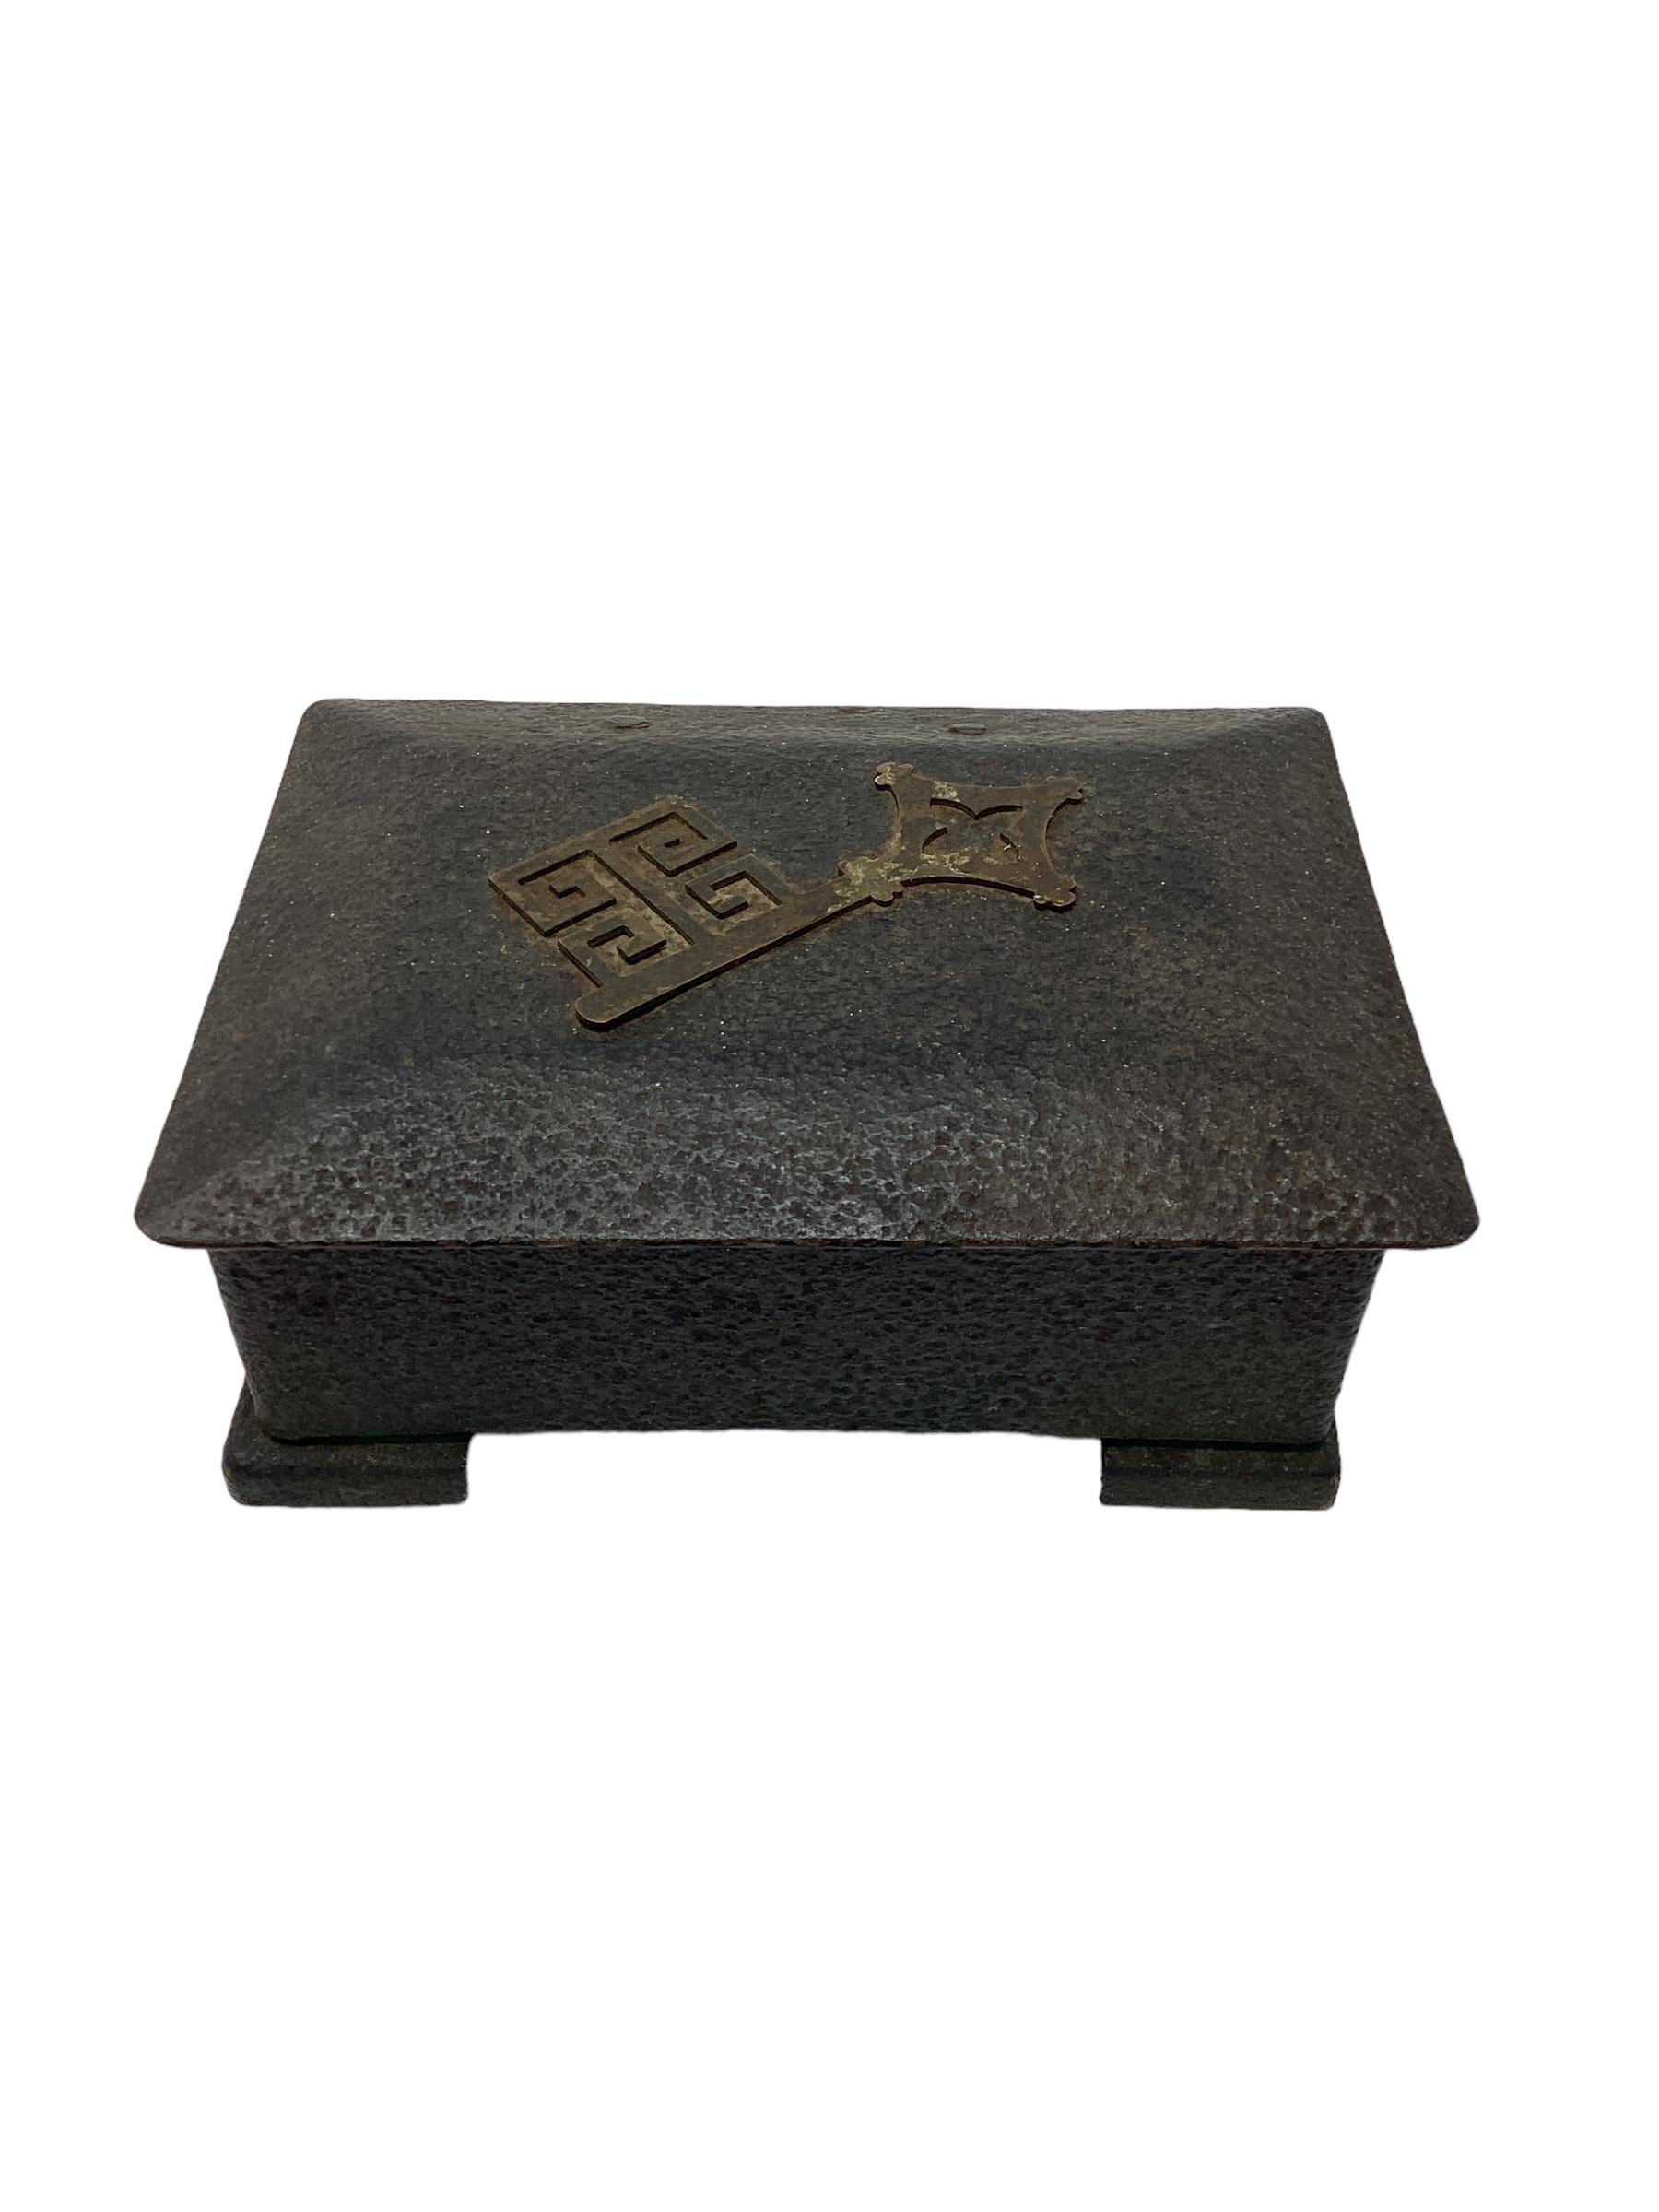 Boîte en bronze antique en vert-de-gris avec décoration en forme de clé grecque. La boîte est doublée de bois et aurait pu contenir des cigarettes ou des bibelots. 